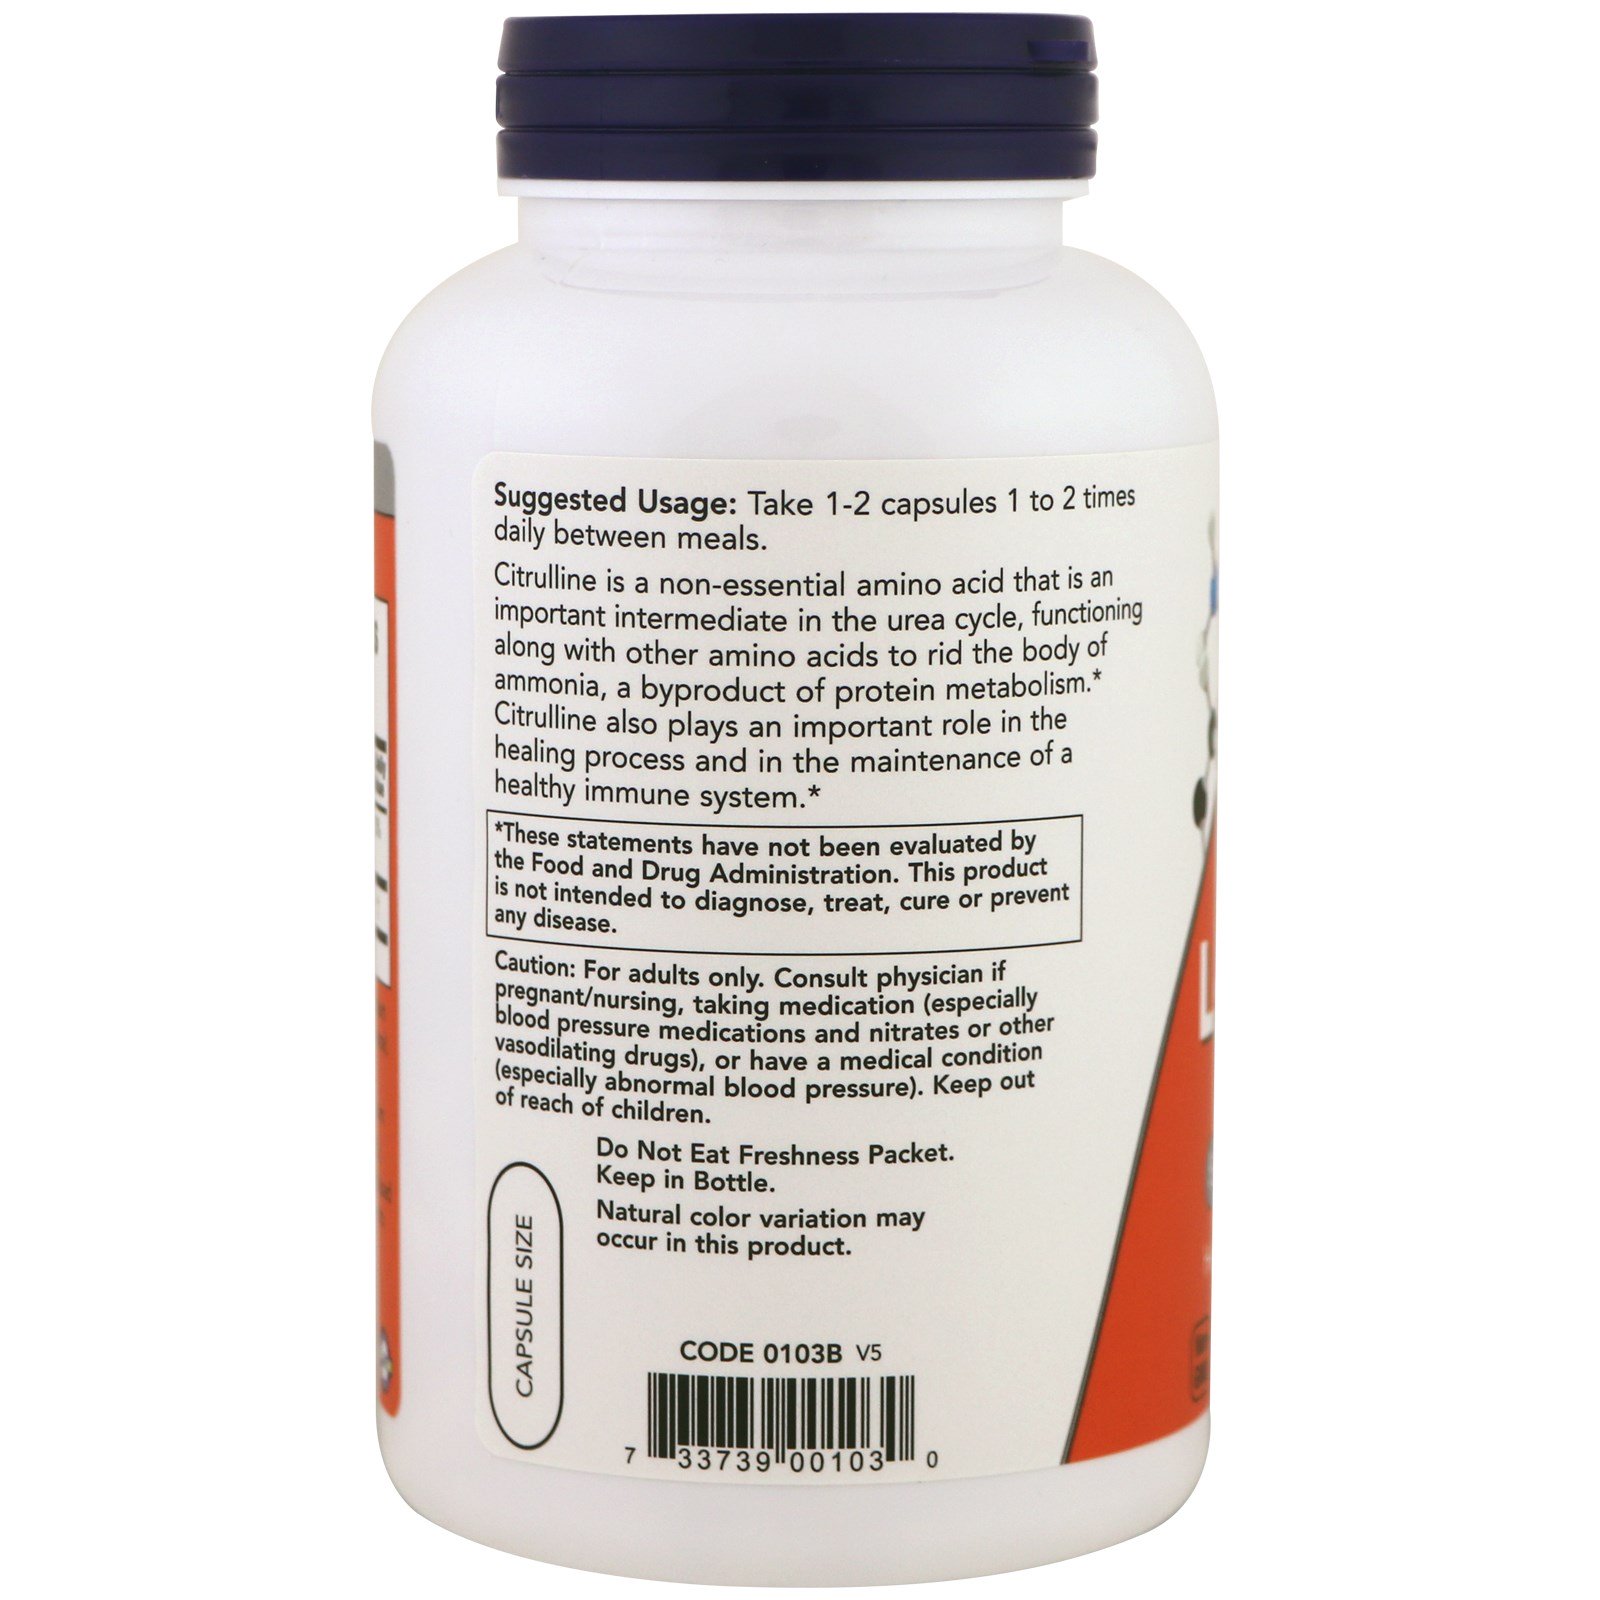 L-Citrulline, L-Цитруллин 750 мг - 180 капсул